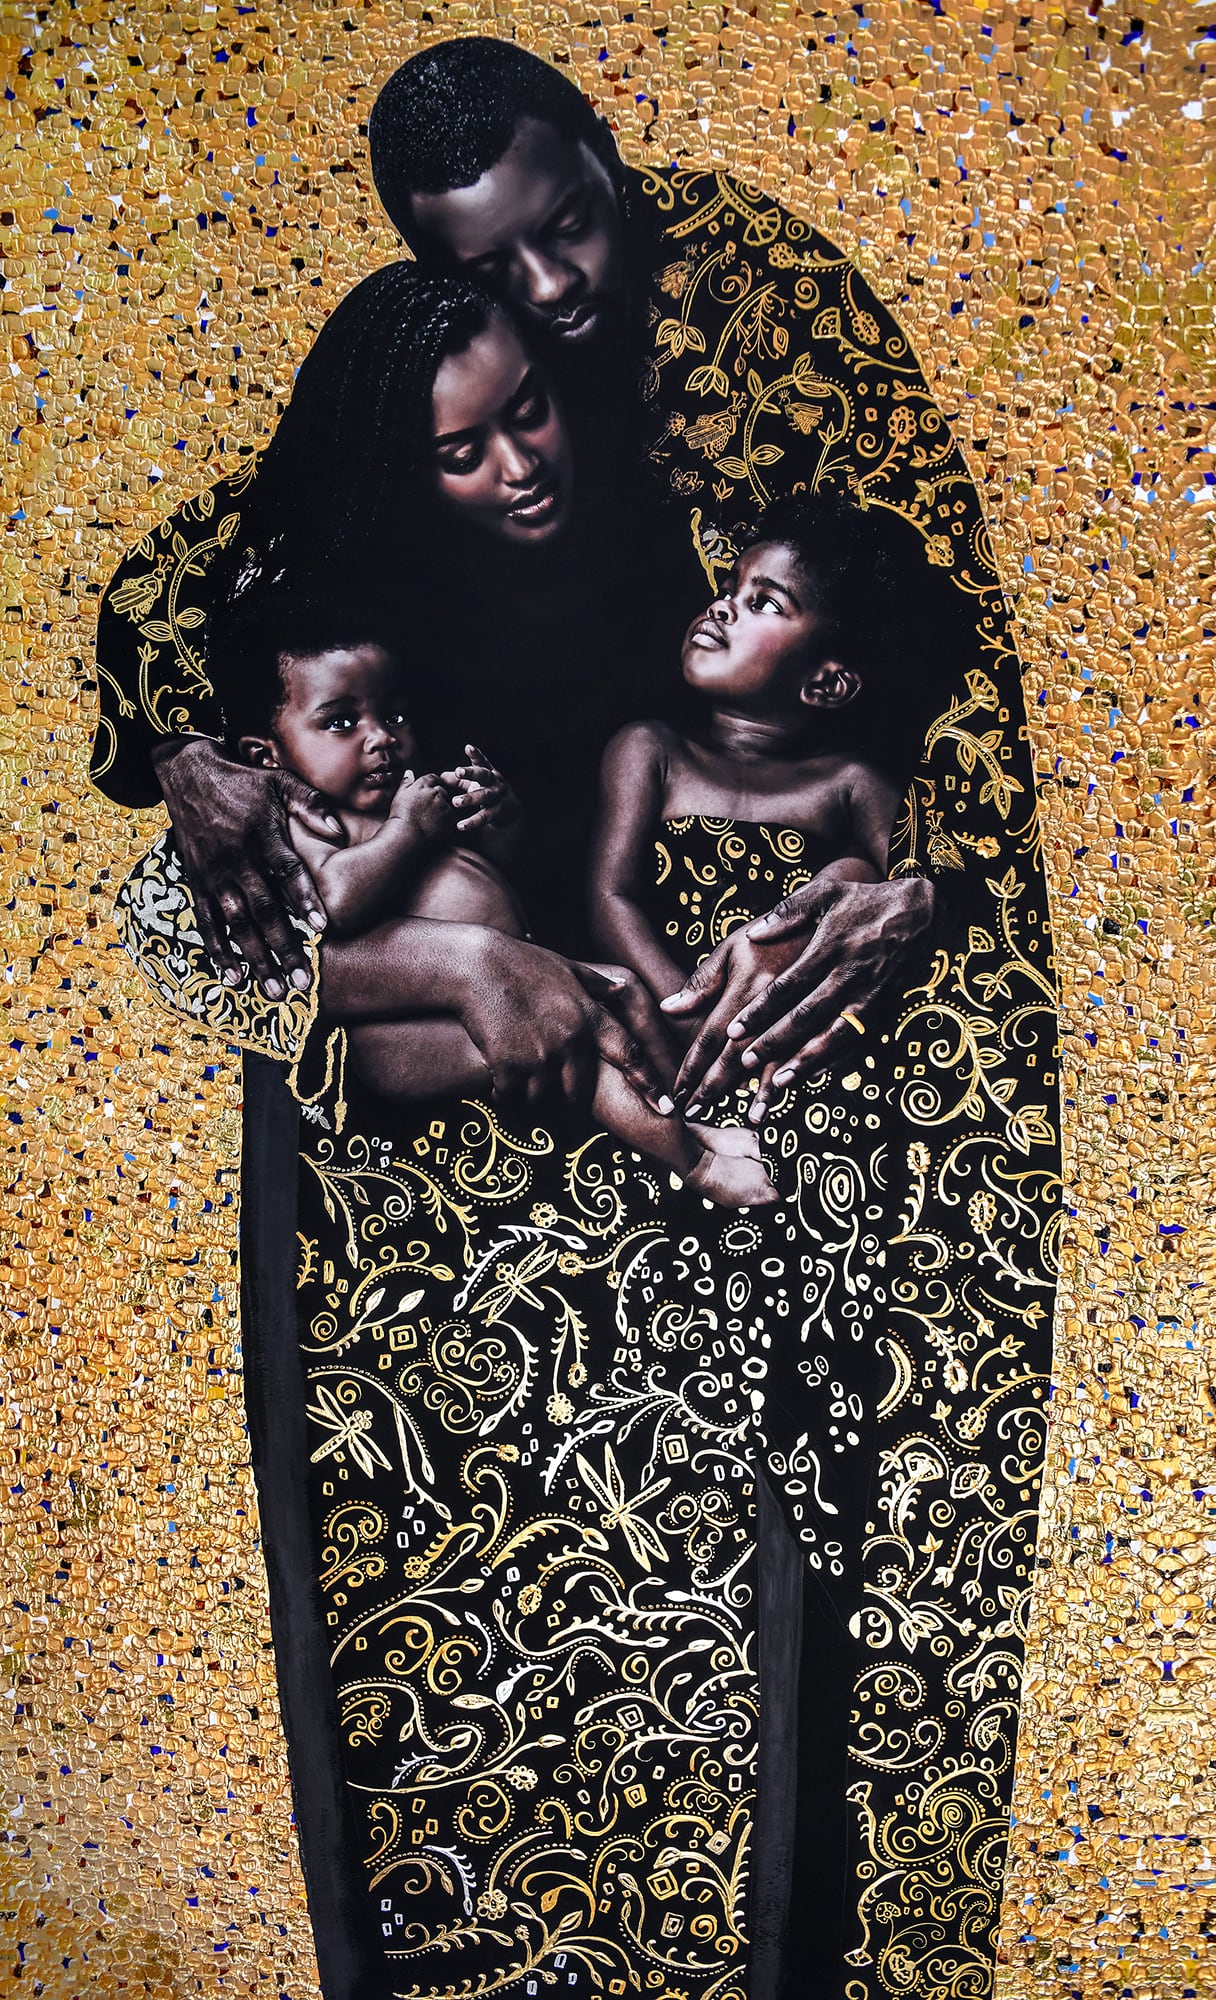 familia negra imagen de union, fotografia y retoque estilo klimt con oro de 24 quilates por Tawny chatmon